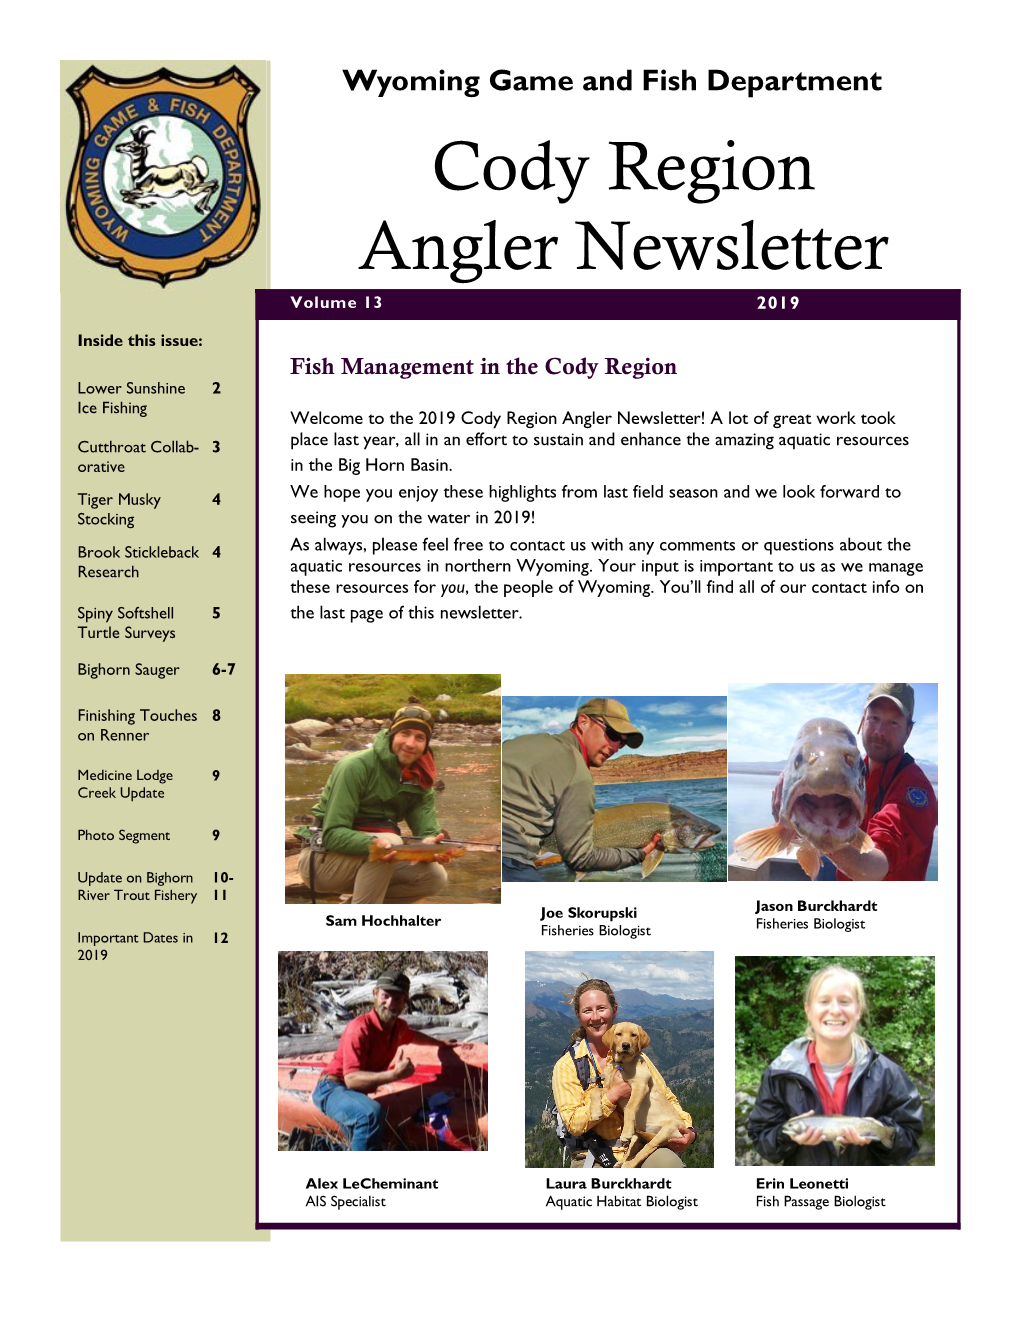 Cody Region Angler Newsletter Volume 13 2019